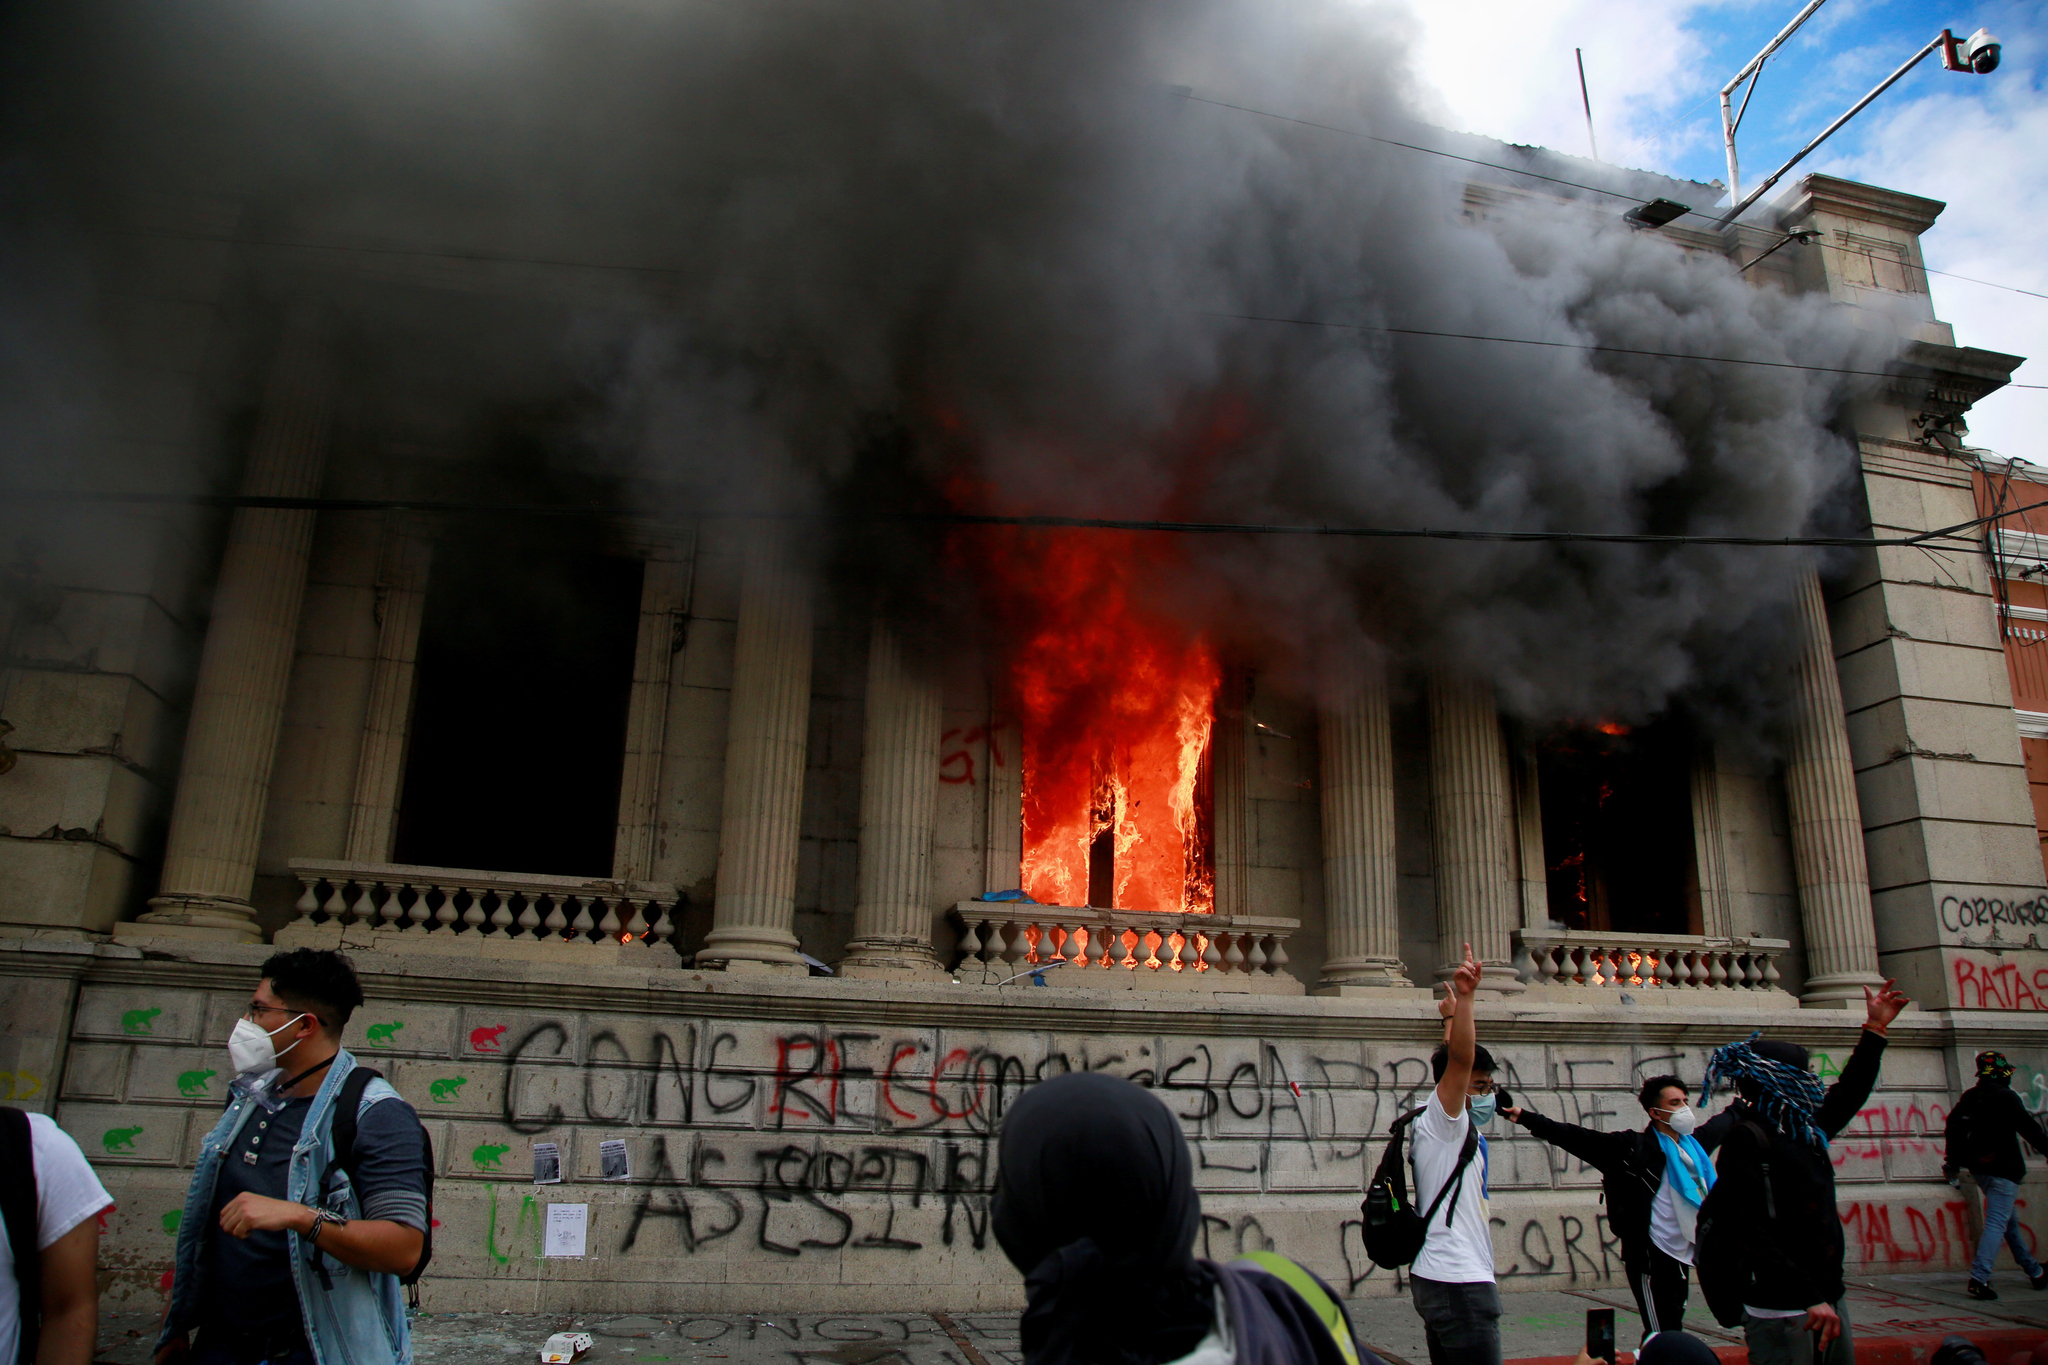 21 일 과테말라 시티의 국회 의사당이 반정부 시위대의 방화로 불타고있다. EPA = 연합 뉴스